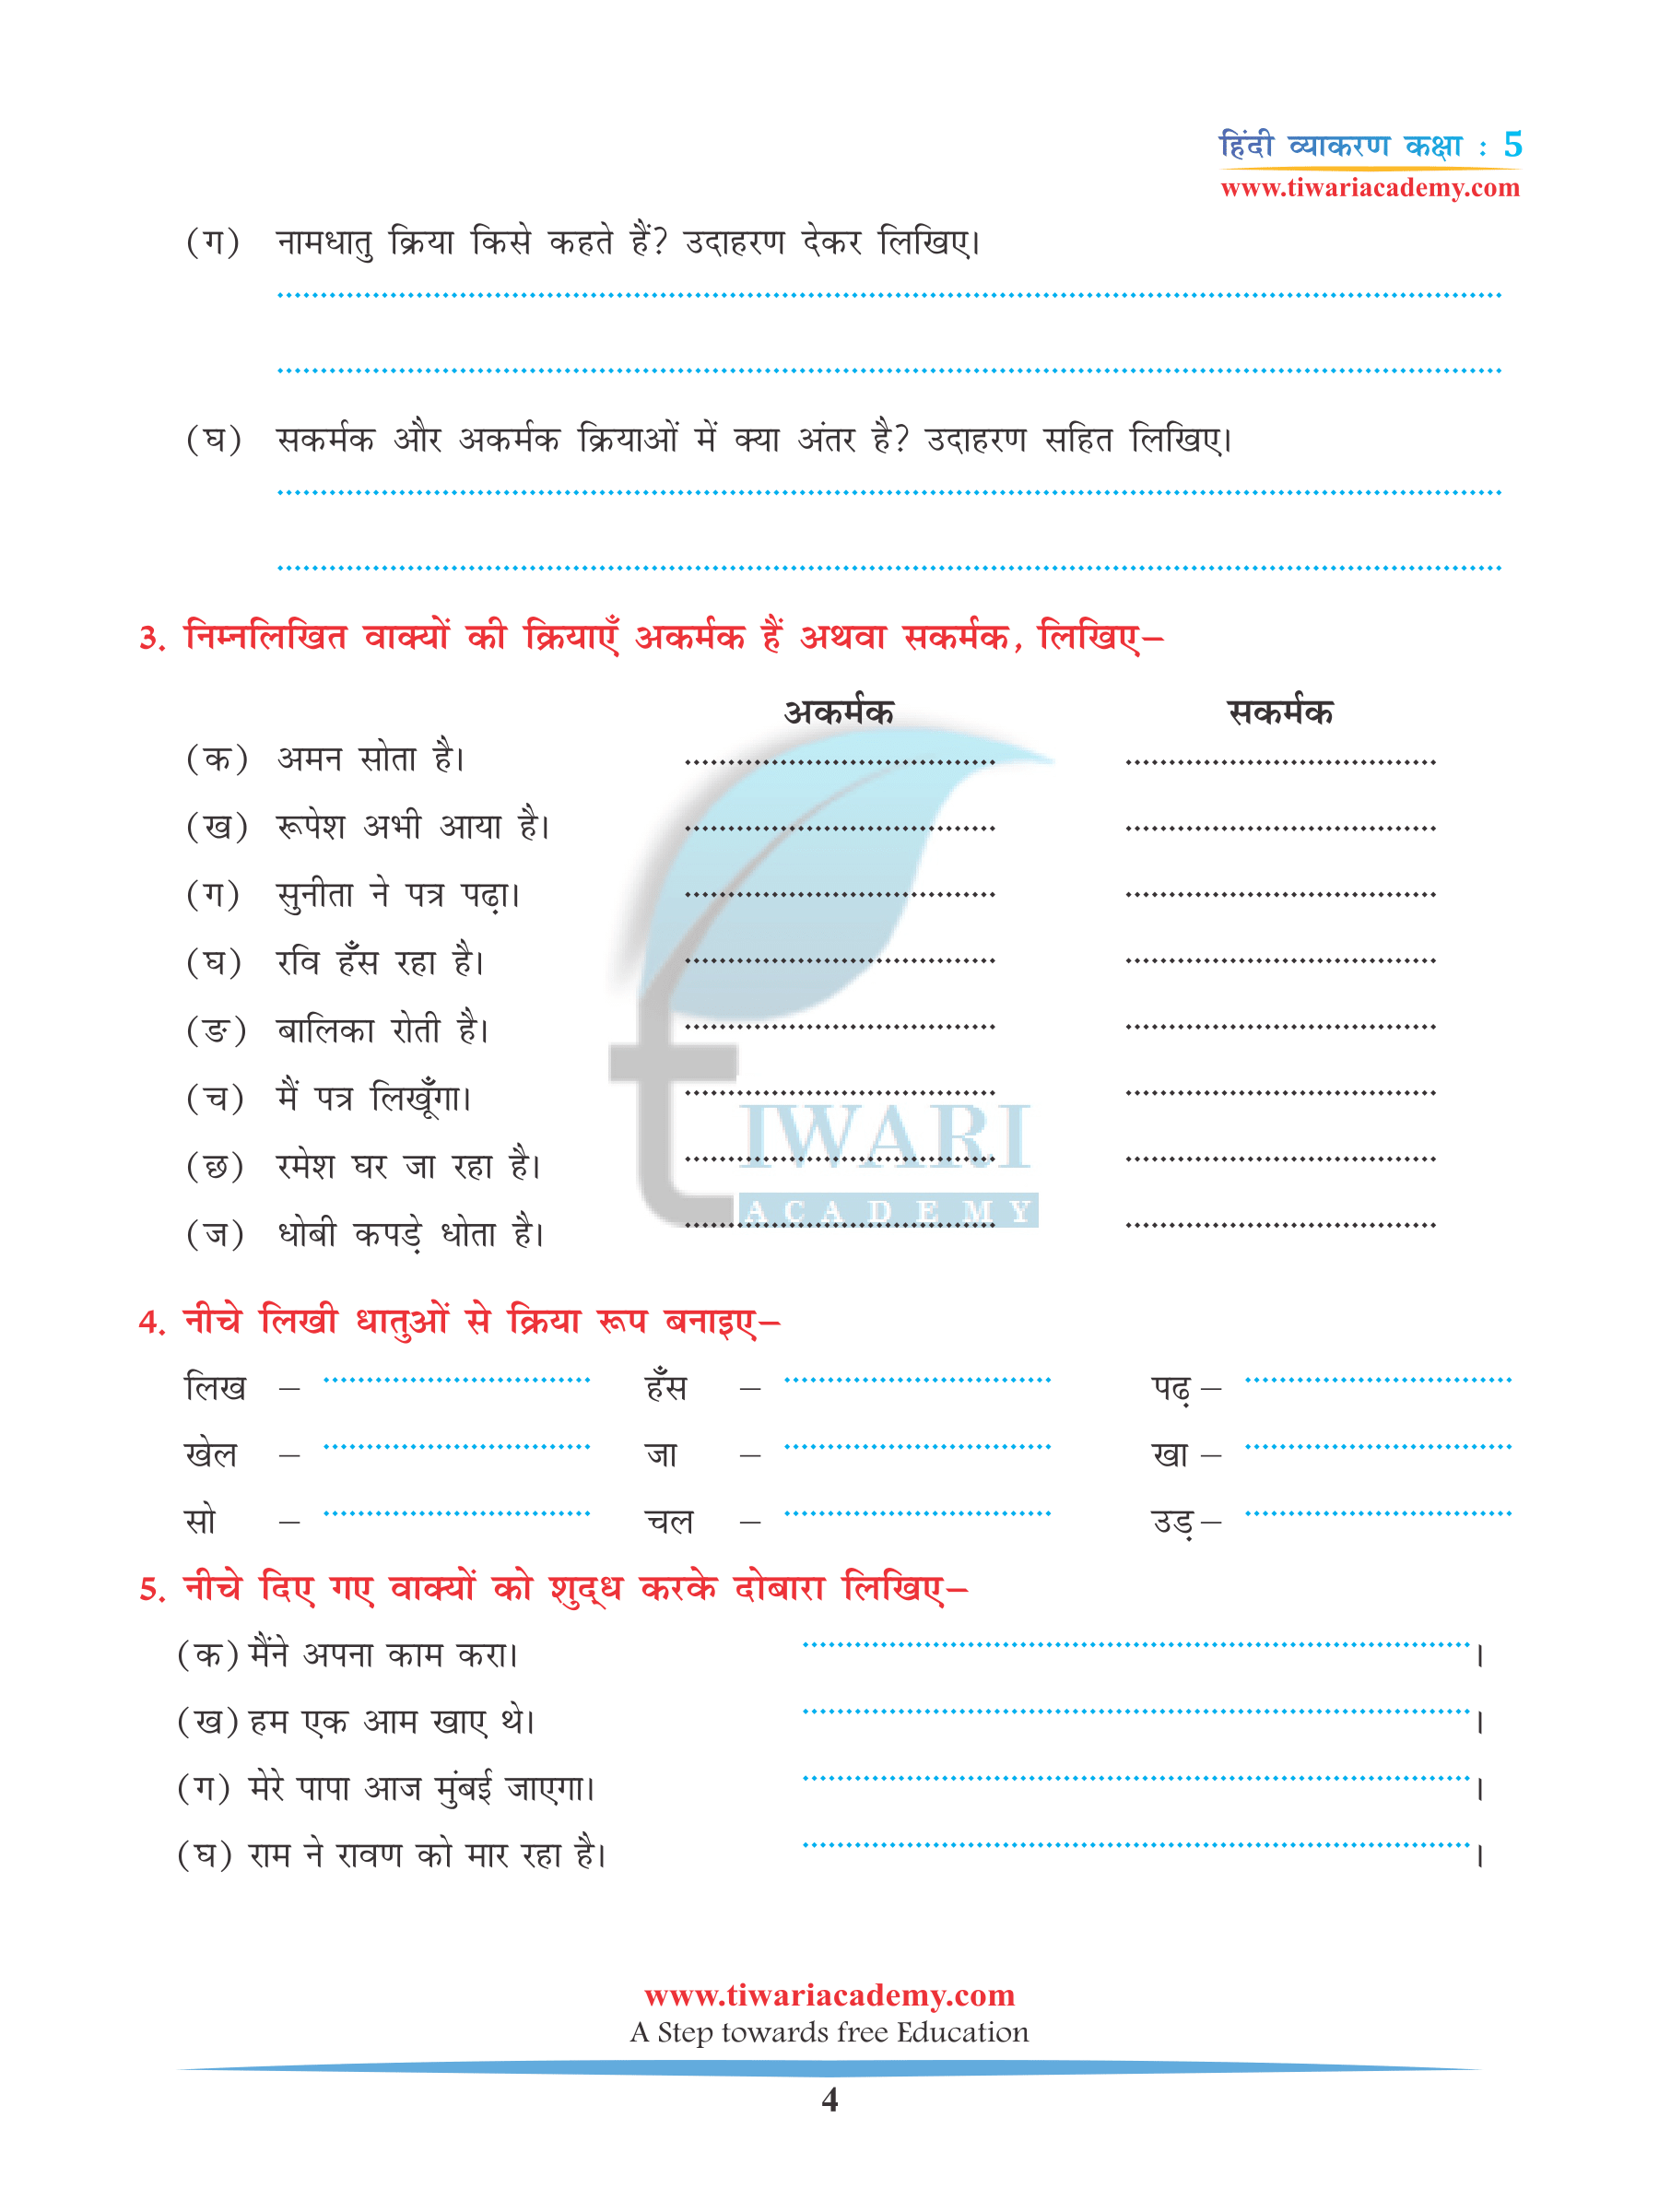 Class 5 Hindi Grammar Chapter 7